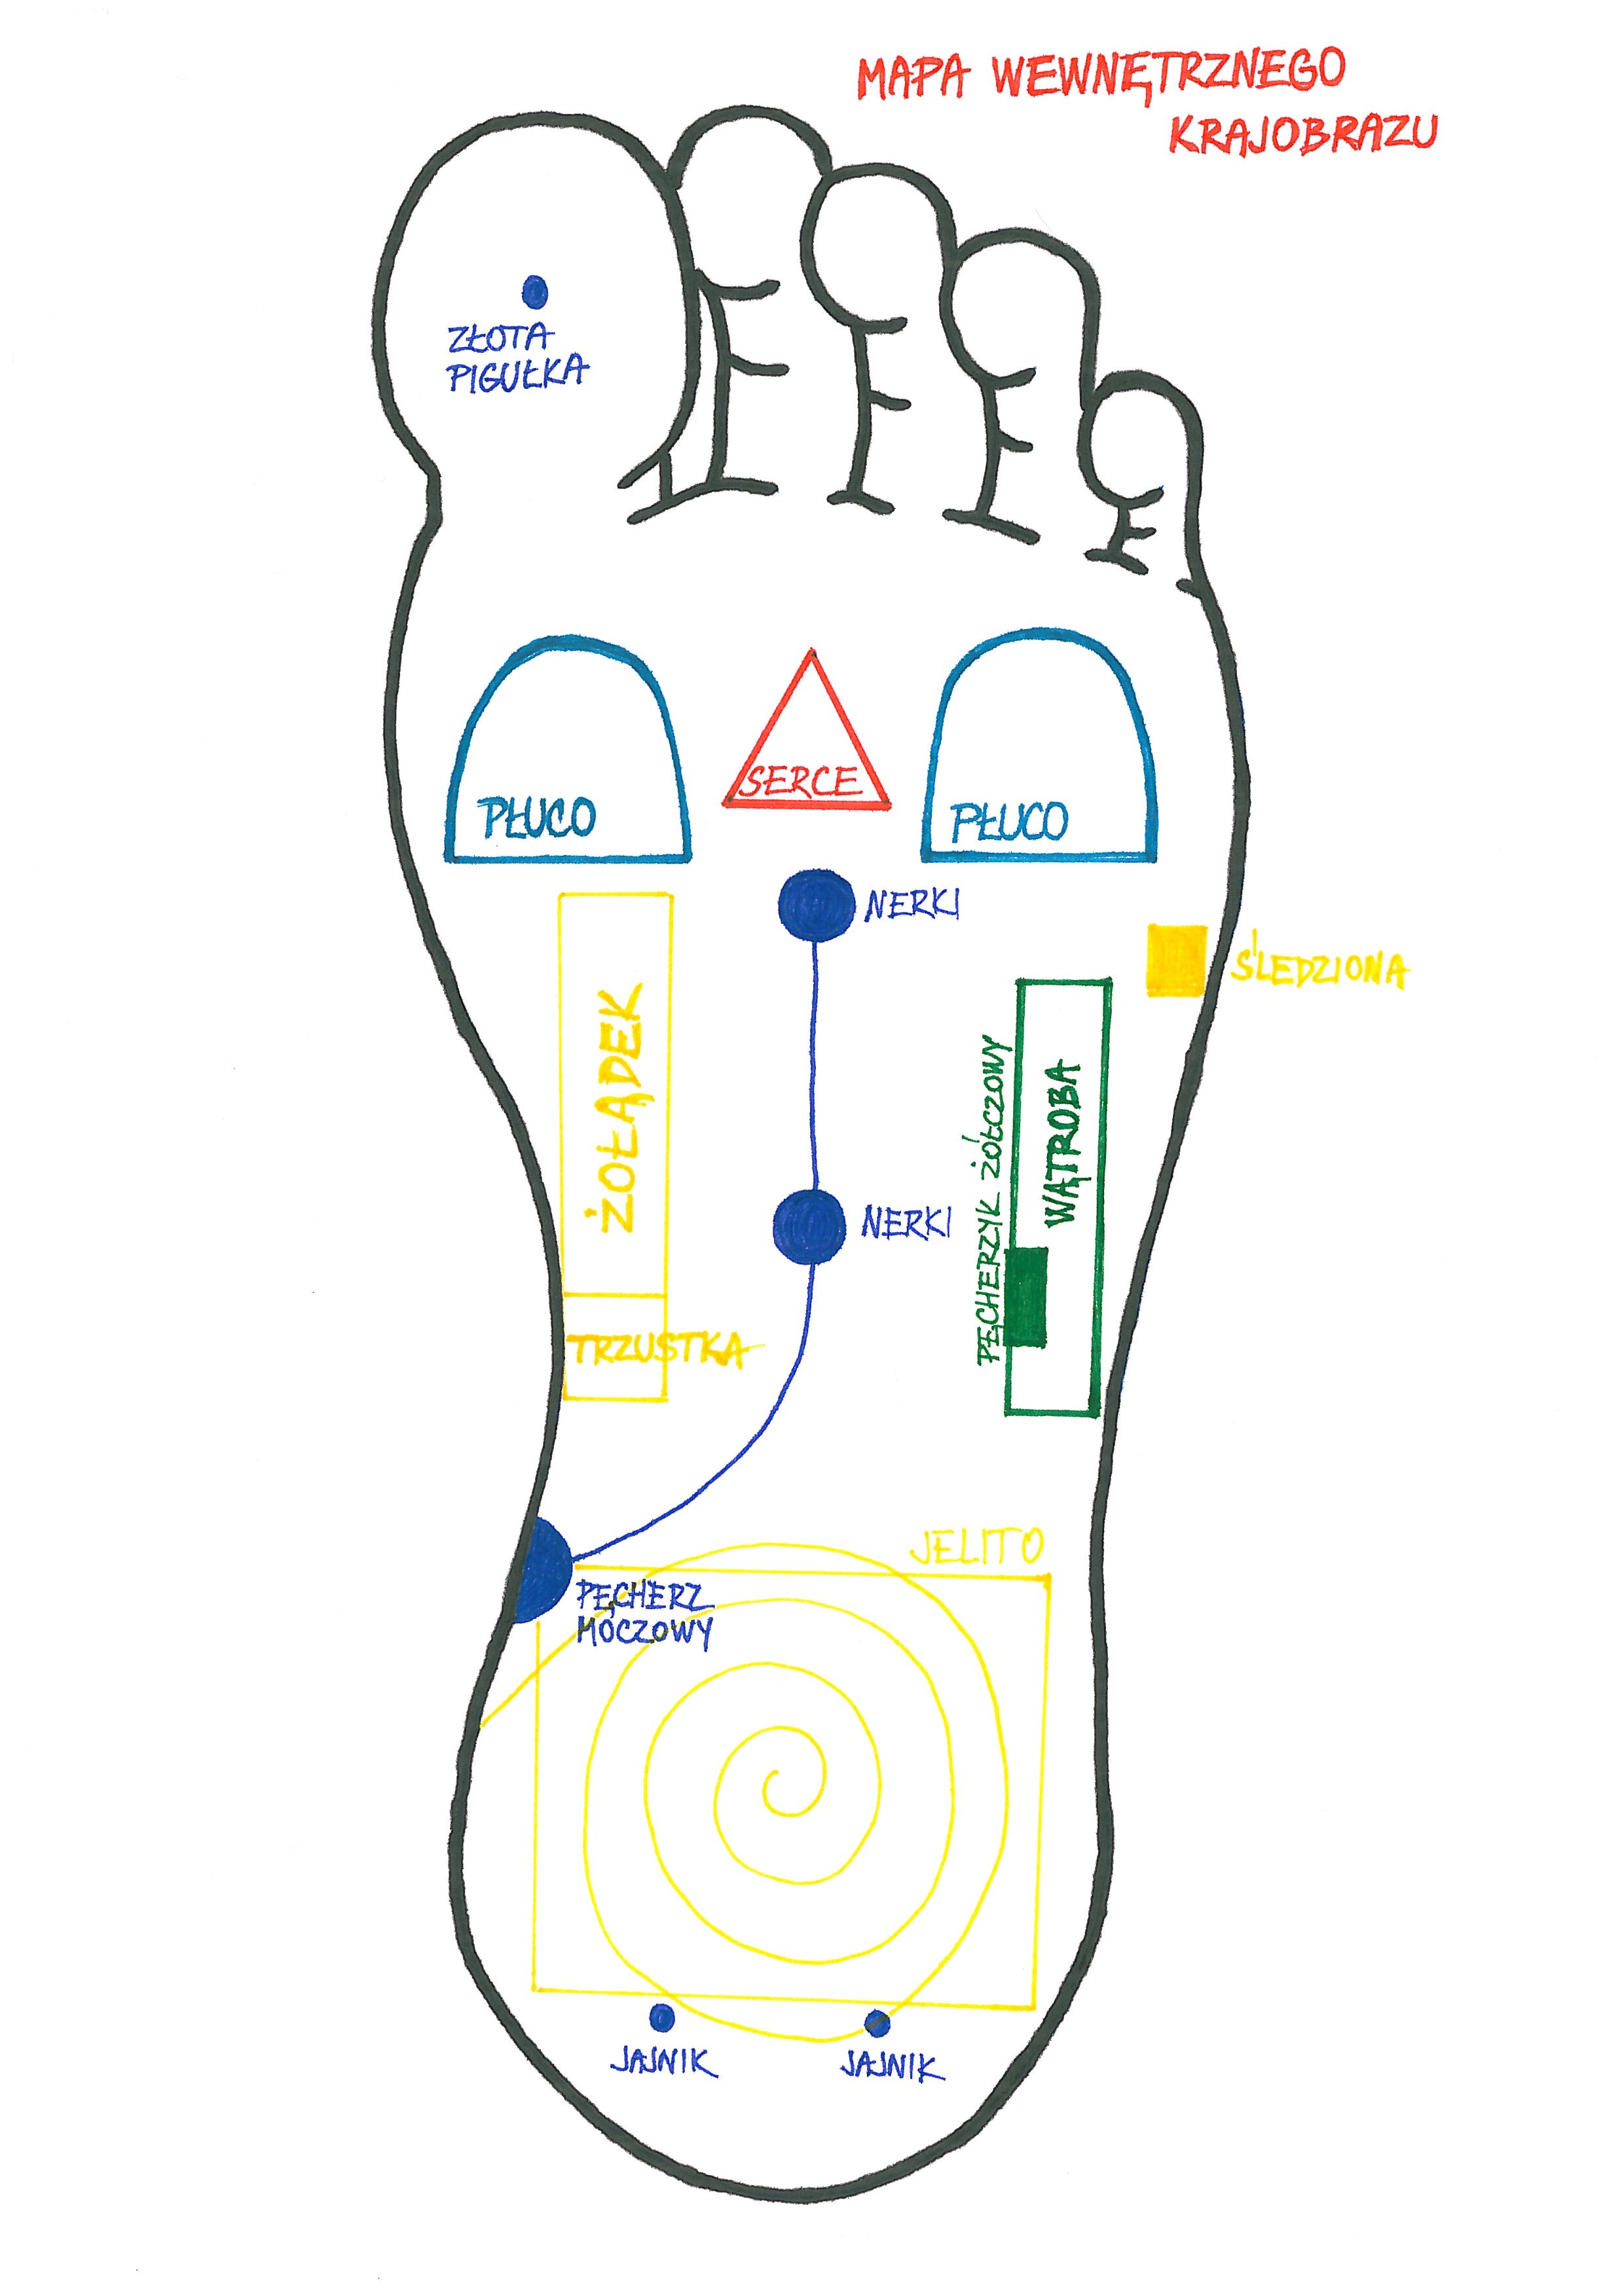 Kurs masażu stóp On Zon Su, Szkolenia refleksologii stóp - Płaskostopie, część 3 - masaż według  Mapy Krajobrazu Wewnętrznego mistrza Mozi Mapa_Krajobrazu_Wewnetrznego.jpg